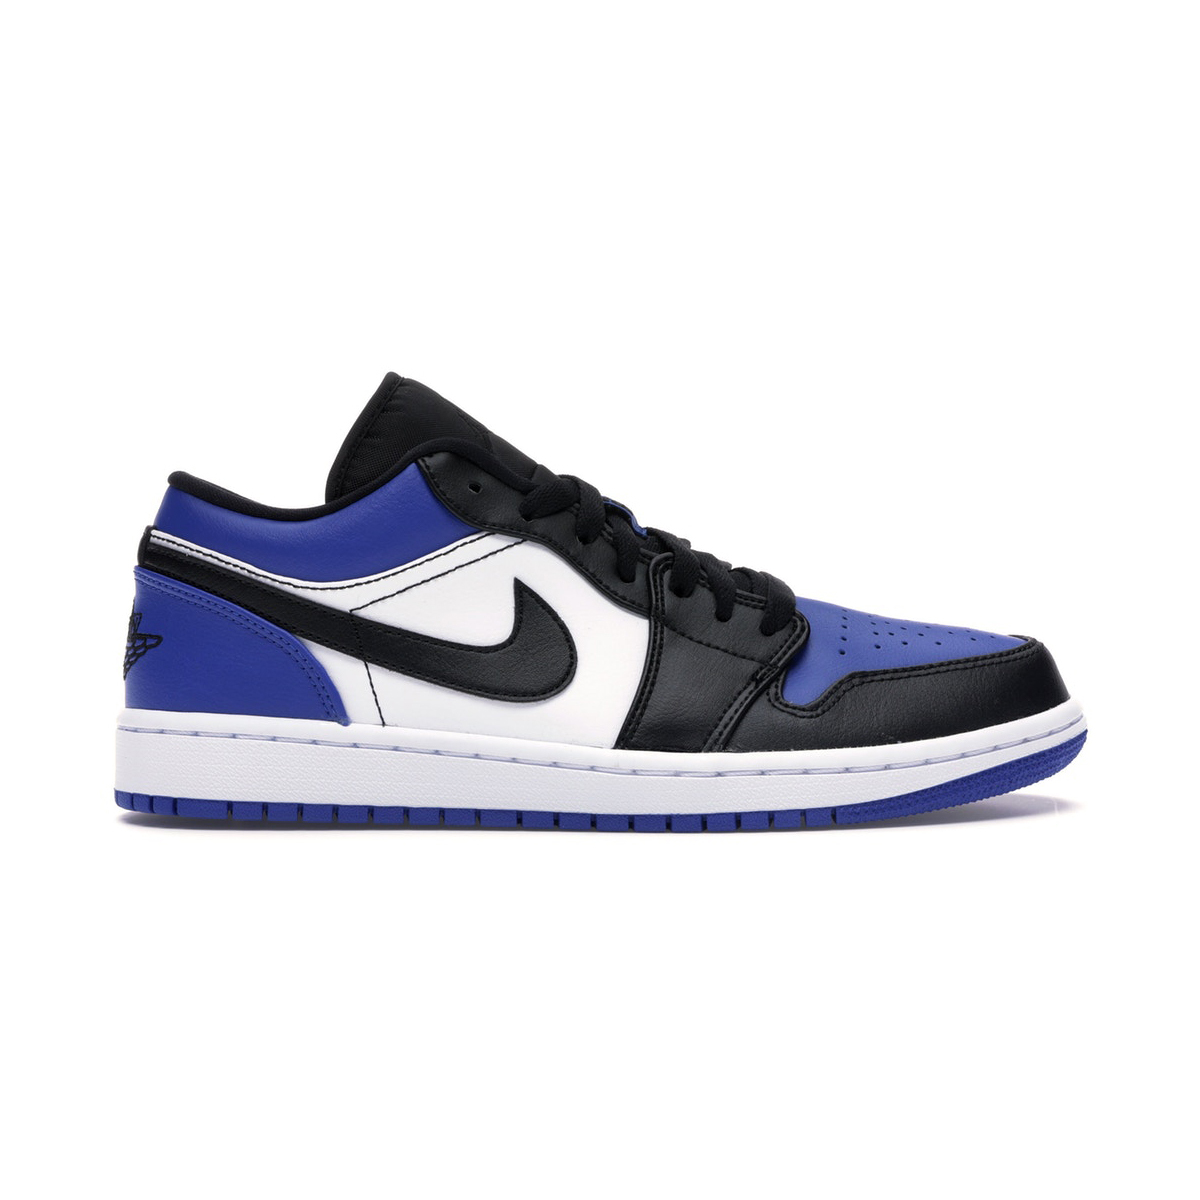 Nike Air Jordan 1 Low Royal Toe Blue And 50 Similar Items